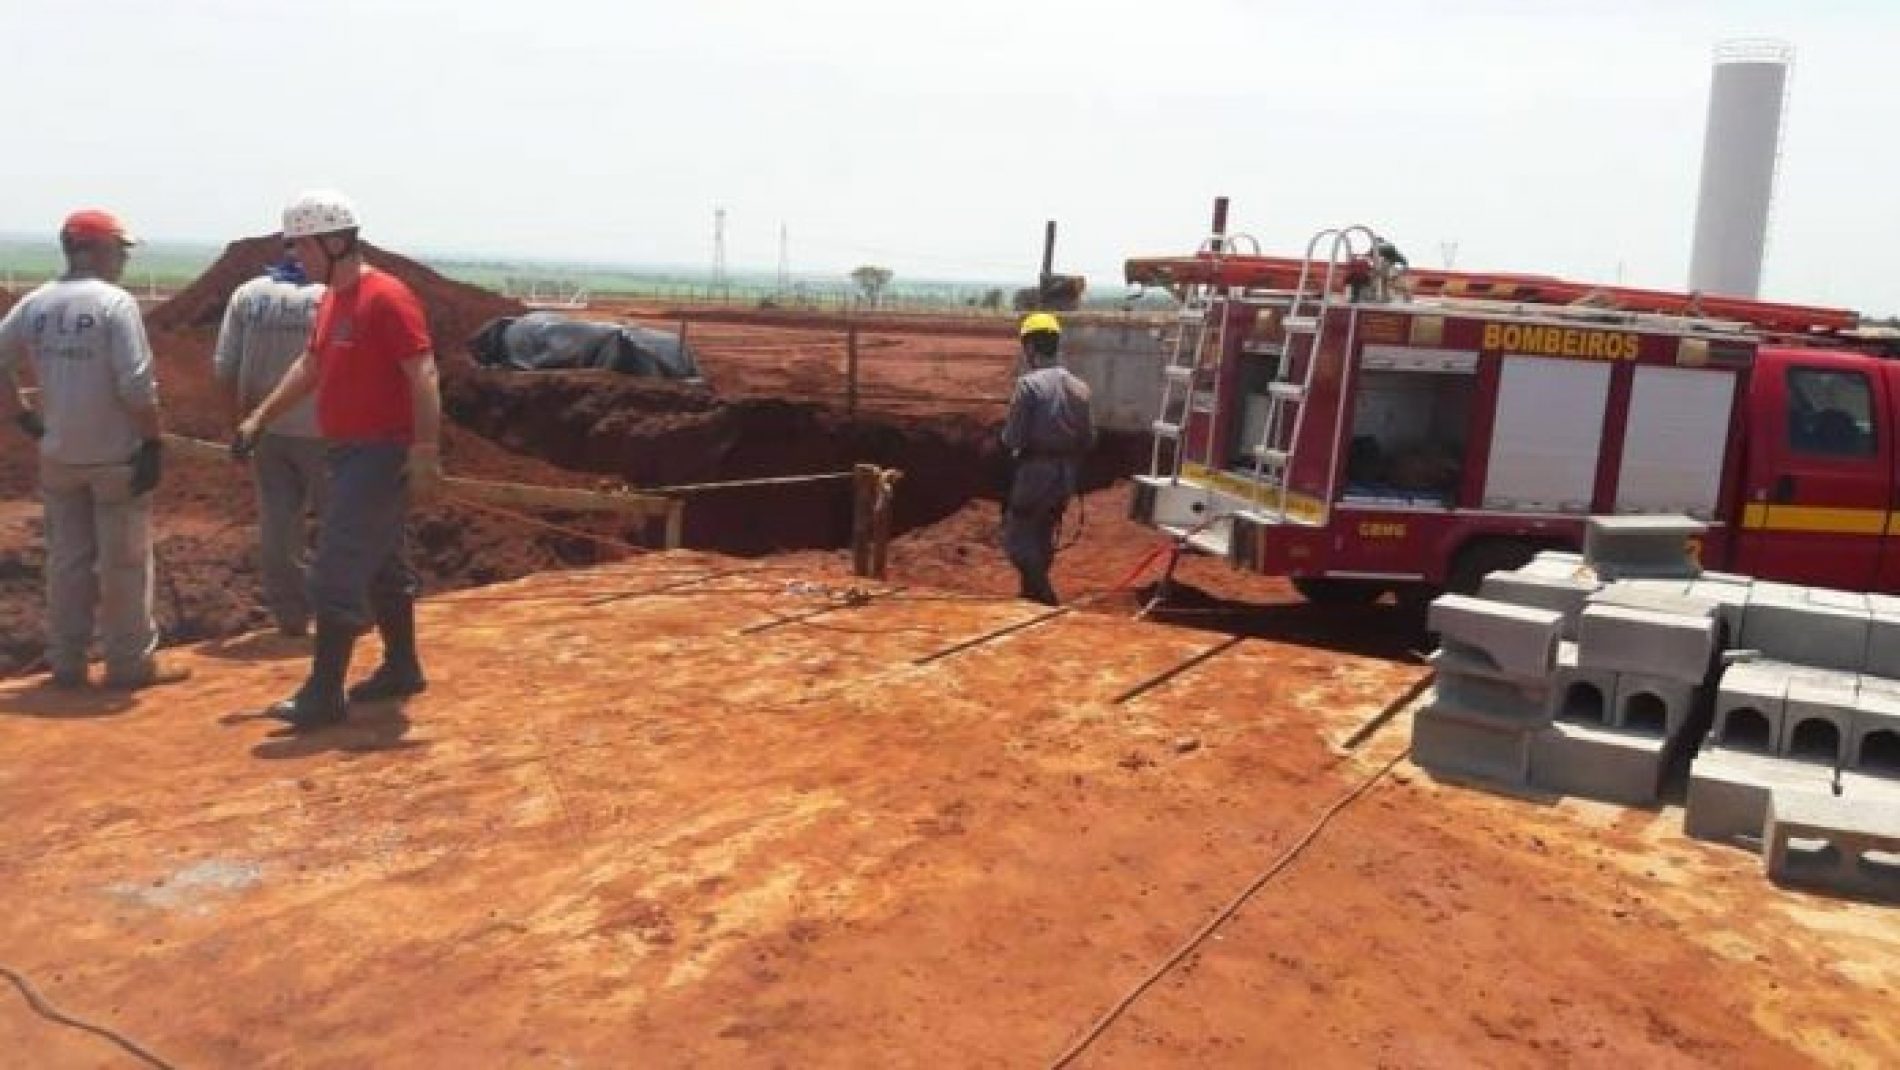 PLANURA: Soterramento mata dois trabalhadores e deixa um com fraturas graves